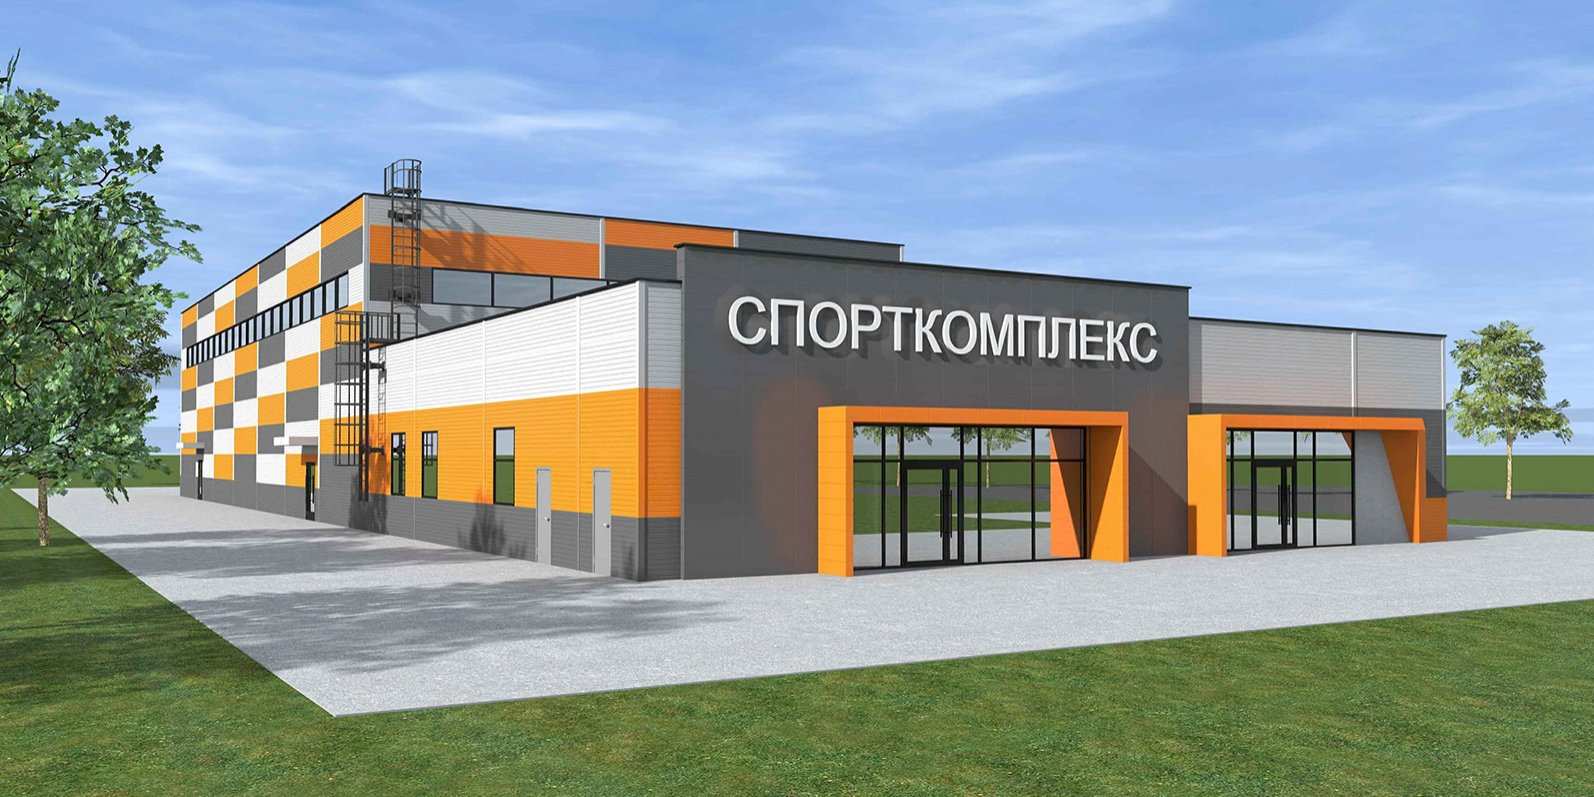 Центр игровых видов спорта построят на Ванеева в Нижнем Новгороде за 160 млн рублей  - фото 1